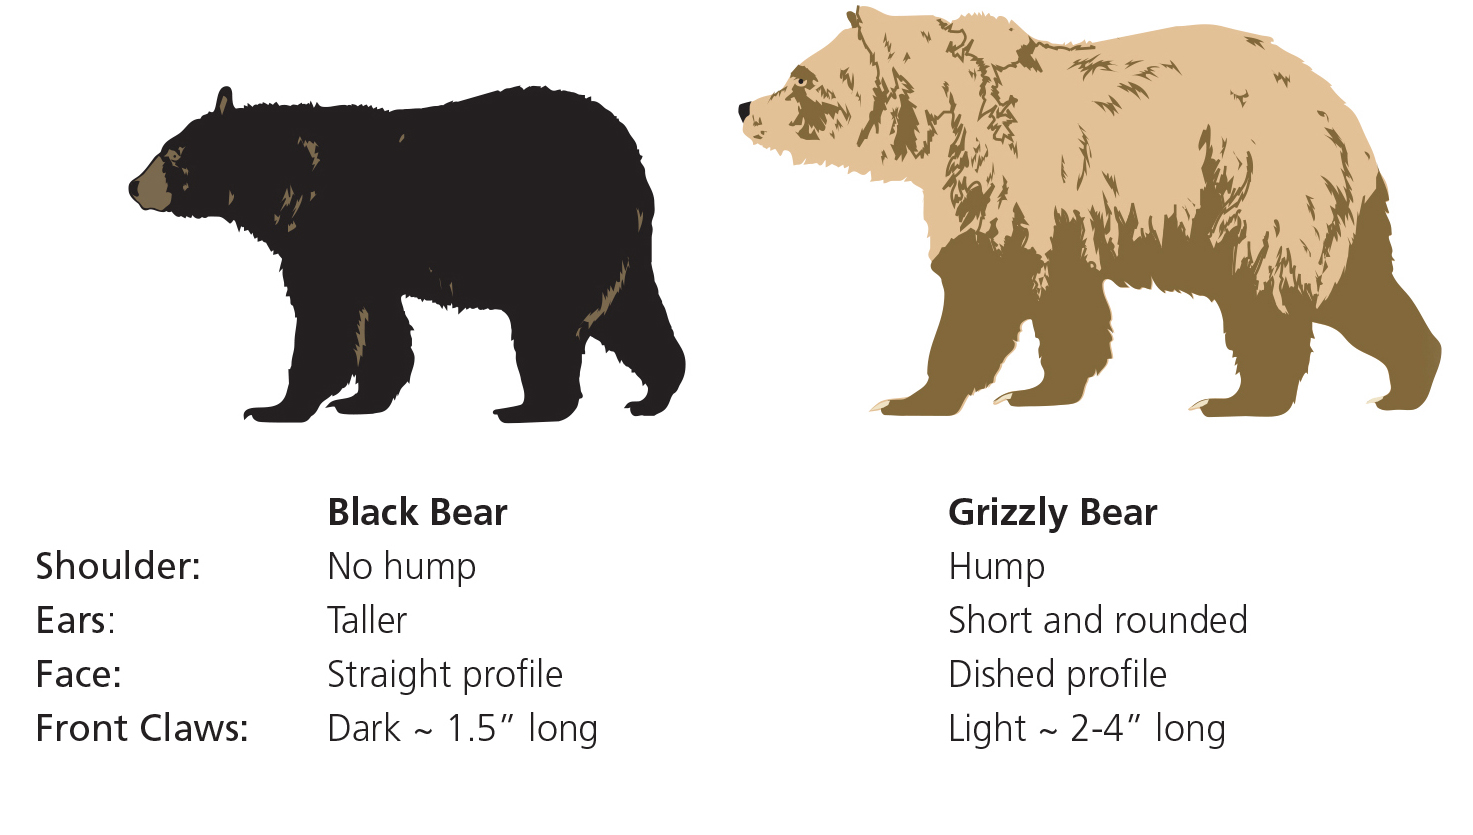 black bear tracks vs grizzly